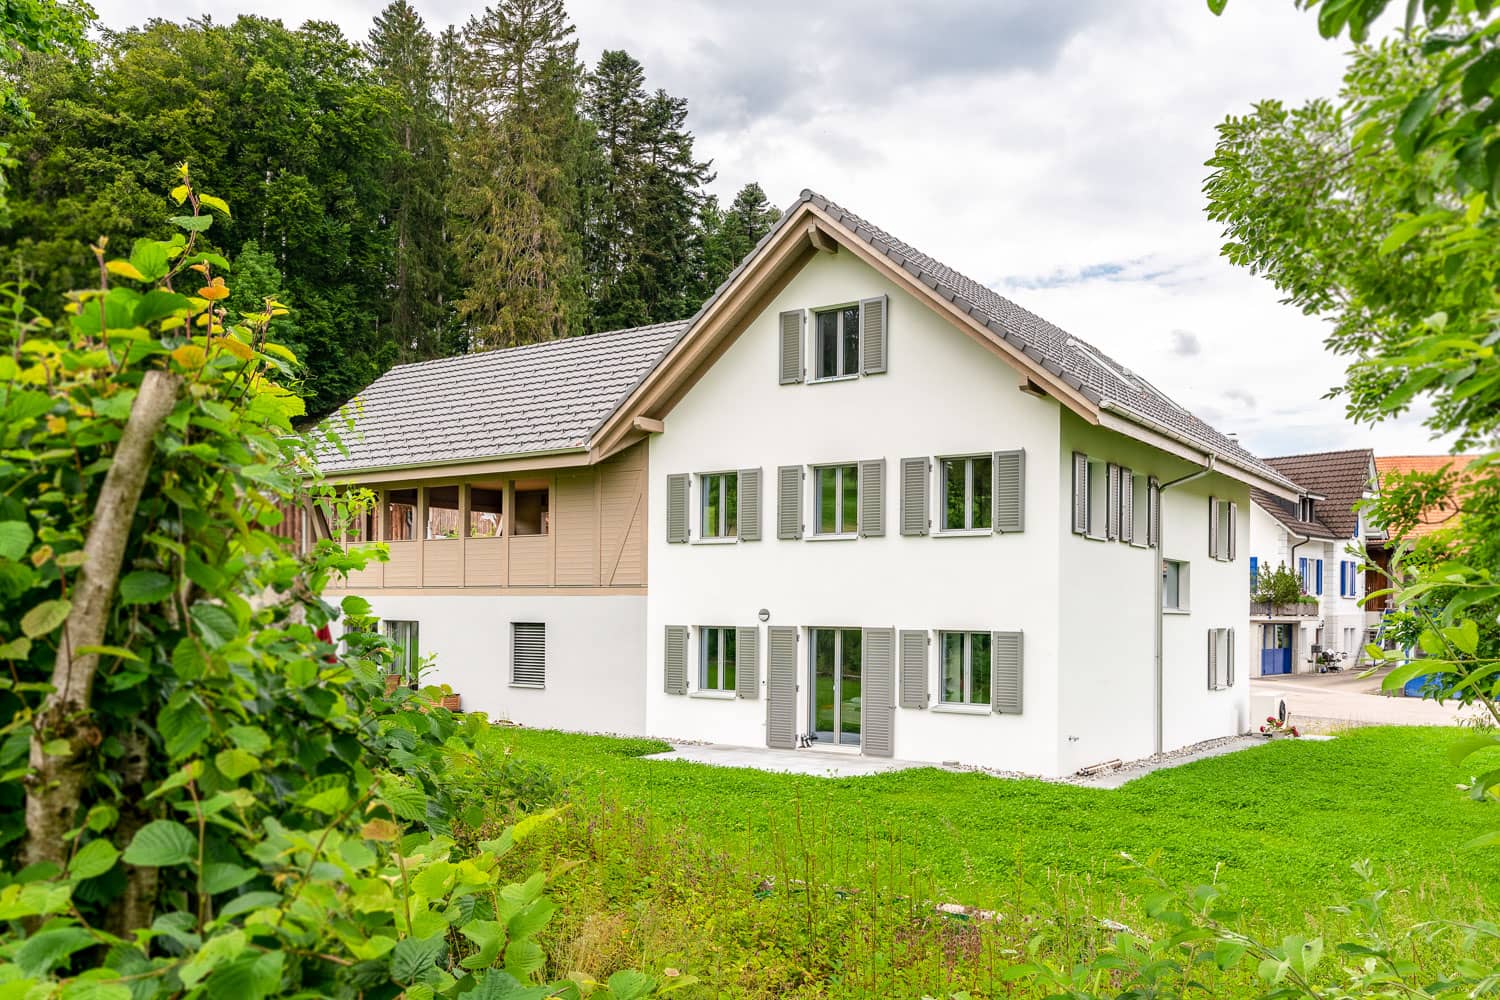 Haus mit Satteldach und grüner Wiese